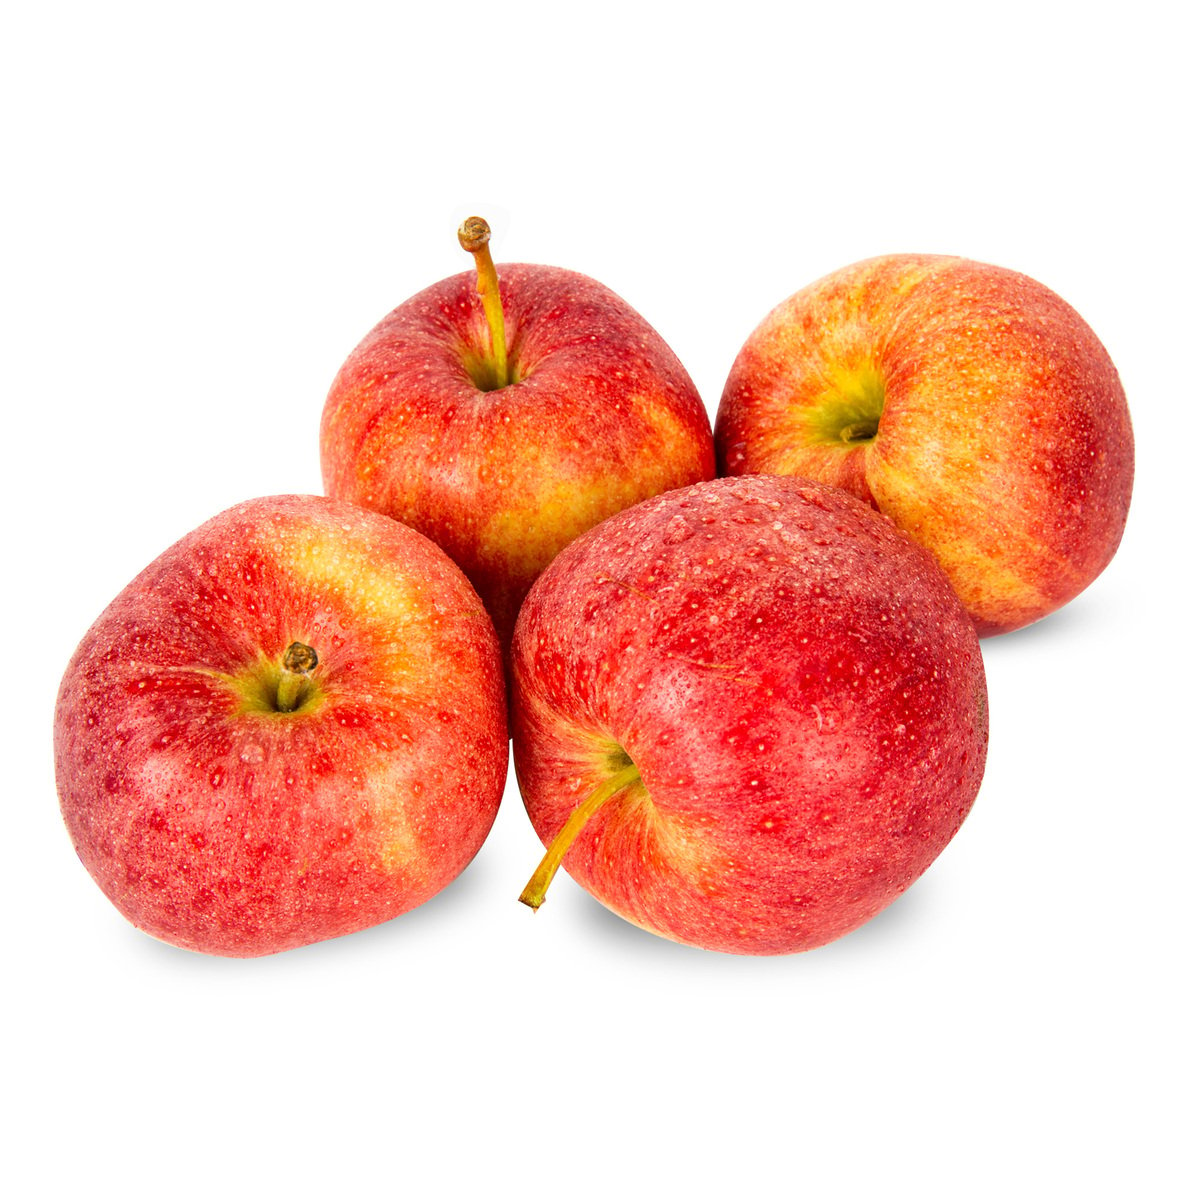 Buy Apple Royal Gala Moldova 1 kg Online at Best Price | Apples | Lulu UAE in UAE